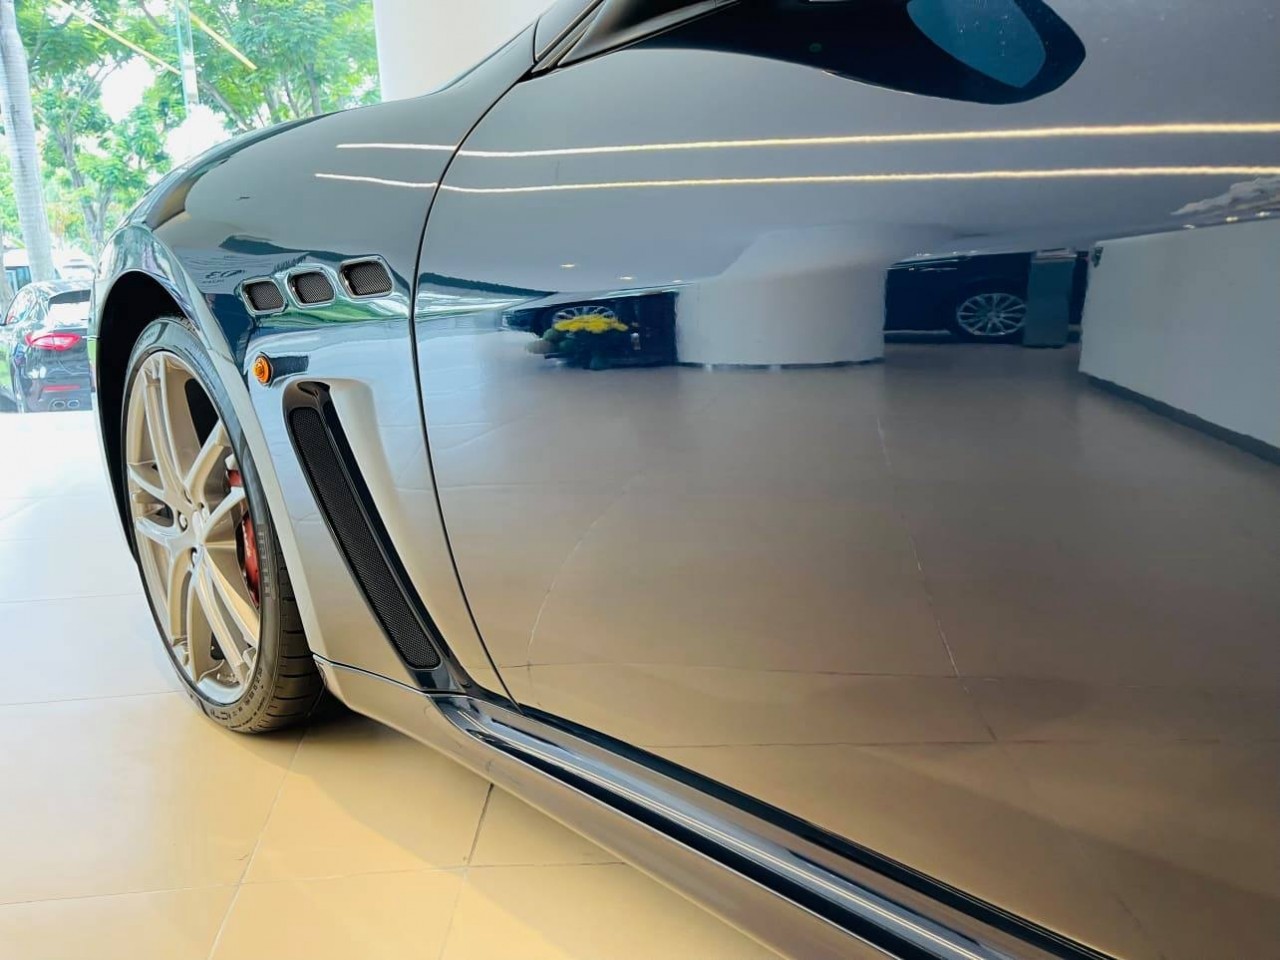 Cận cảnh Maserati GranTurismo Sport tại Việt Nam với giá 13,8 tỷ đồng